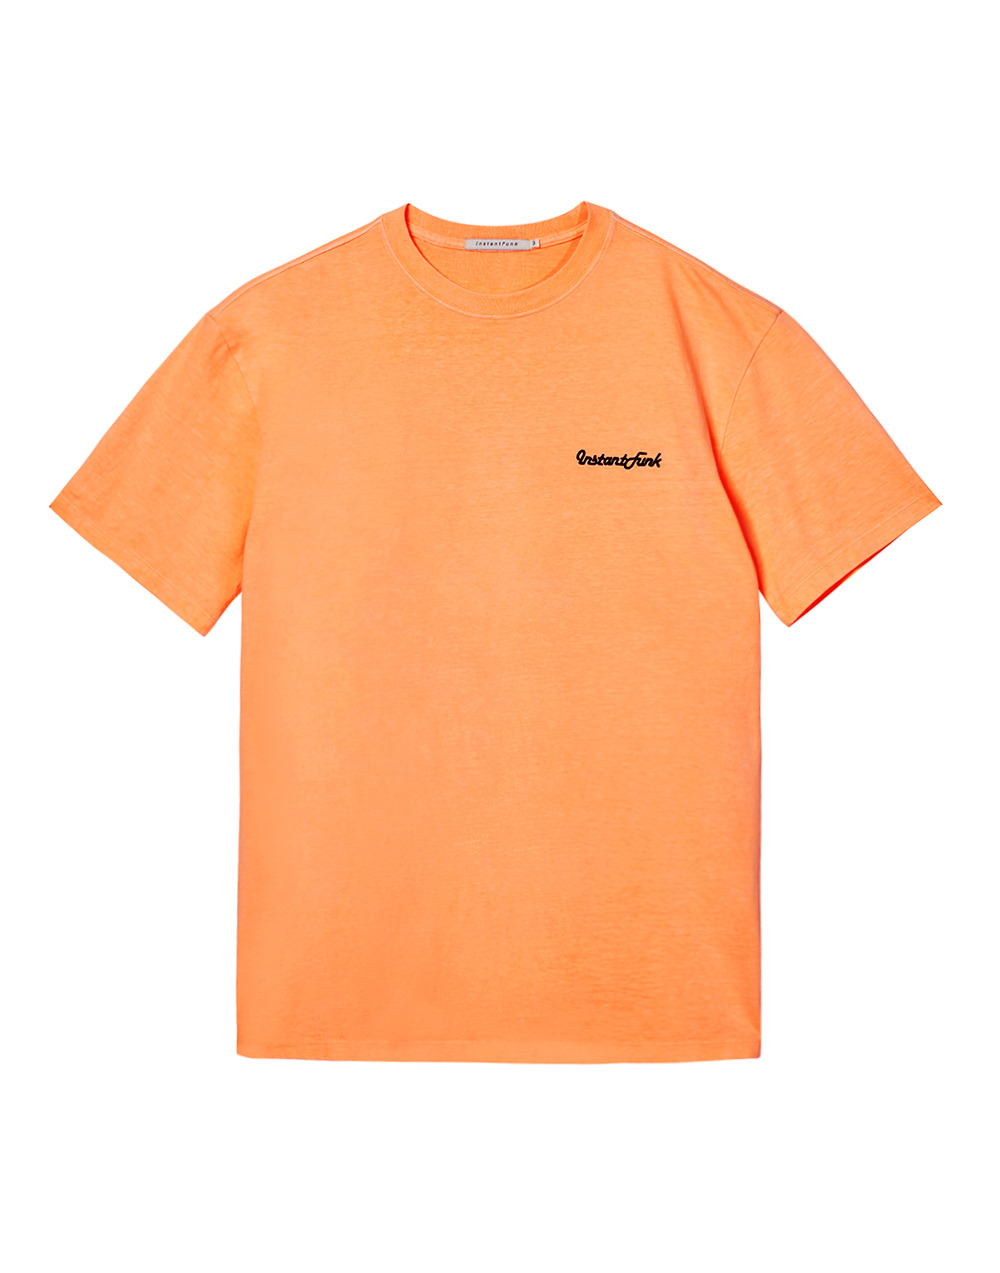 20SS 네온 피그먼트다잉 티셔츠 - 오렌지